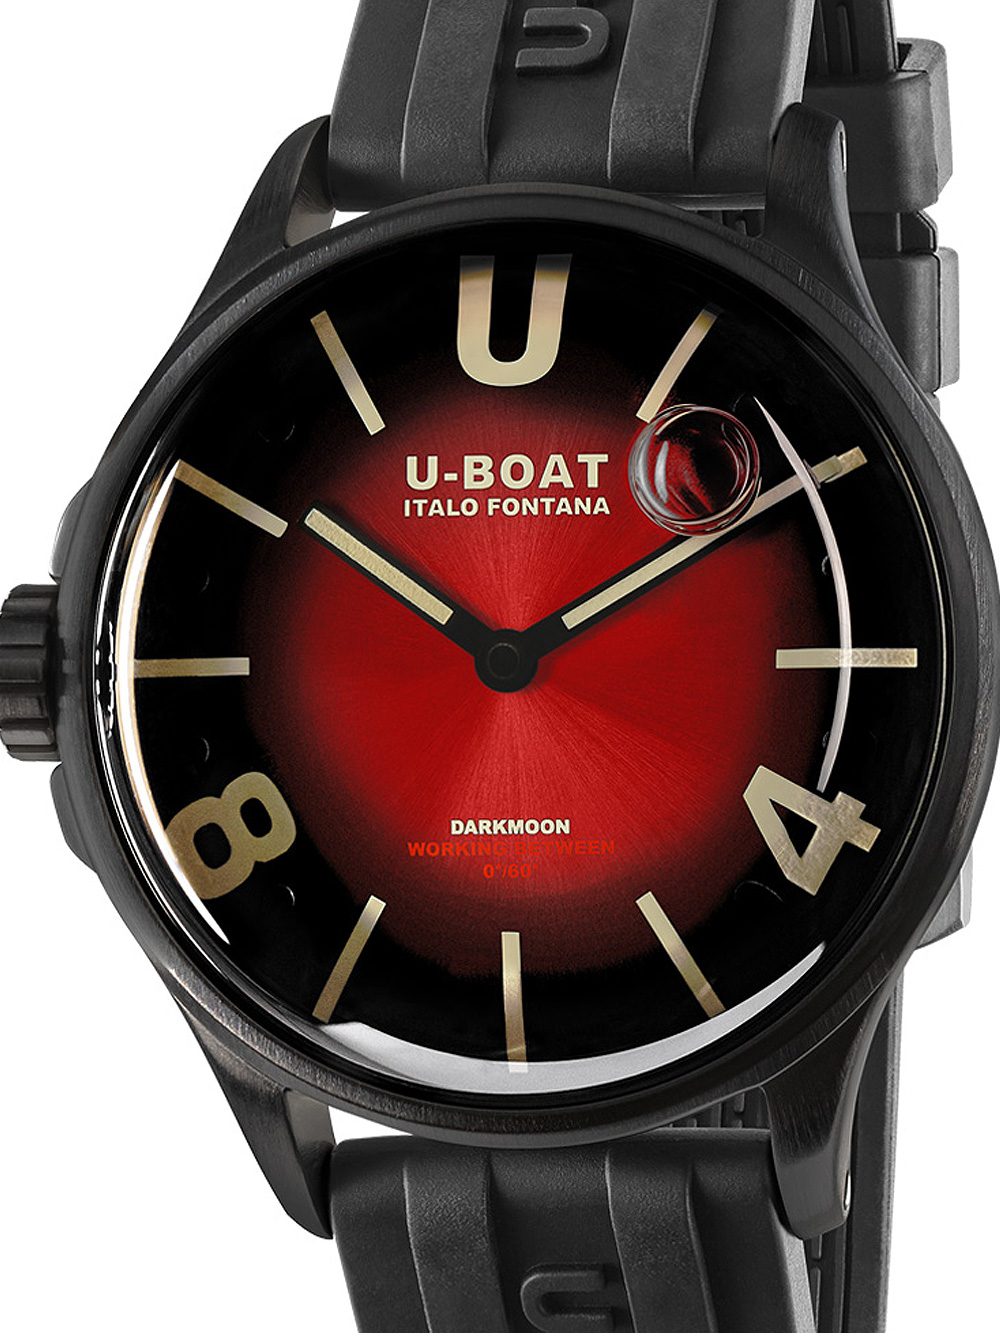 U-Boat 9501 Darkmoon Red PVD Soleil Herrenuhr 40mm 5ATM